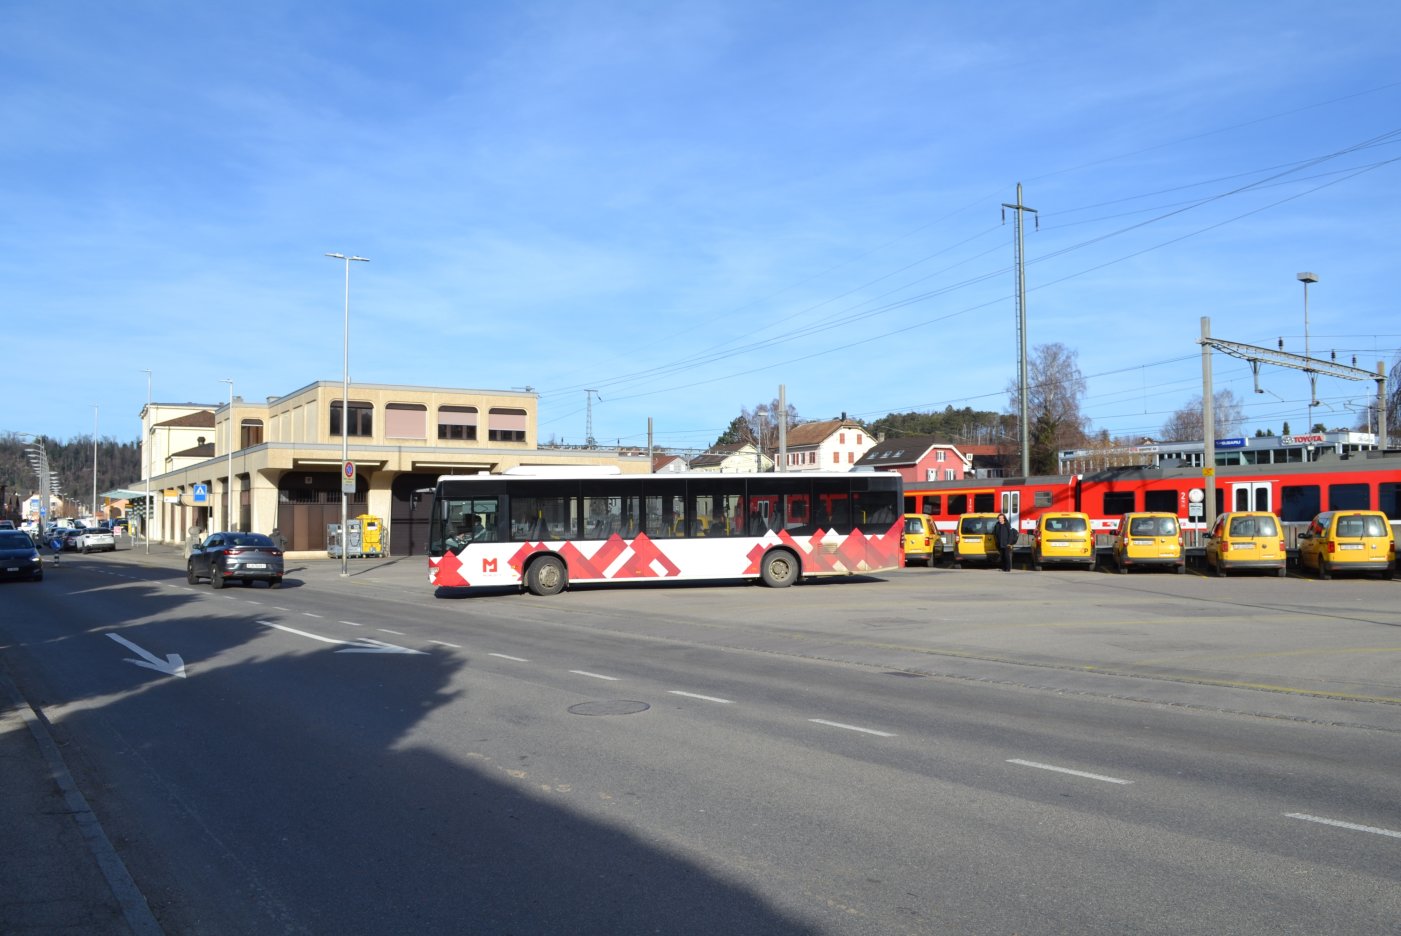 La parcelle comprend le bâtiment de La Poste (à gauche) et la place en goudron sur laquelle stationnent actuellement les bus, à défaut de disposer d’une gare routière.